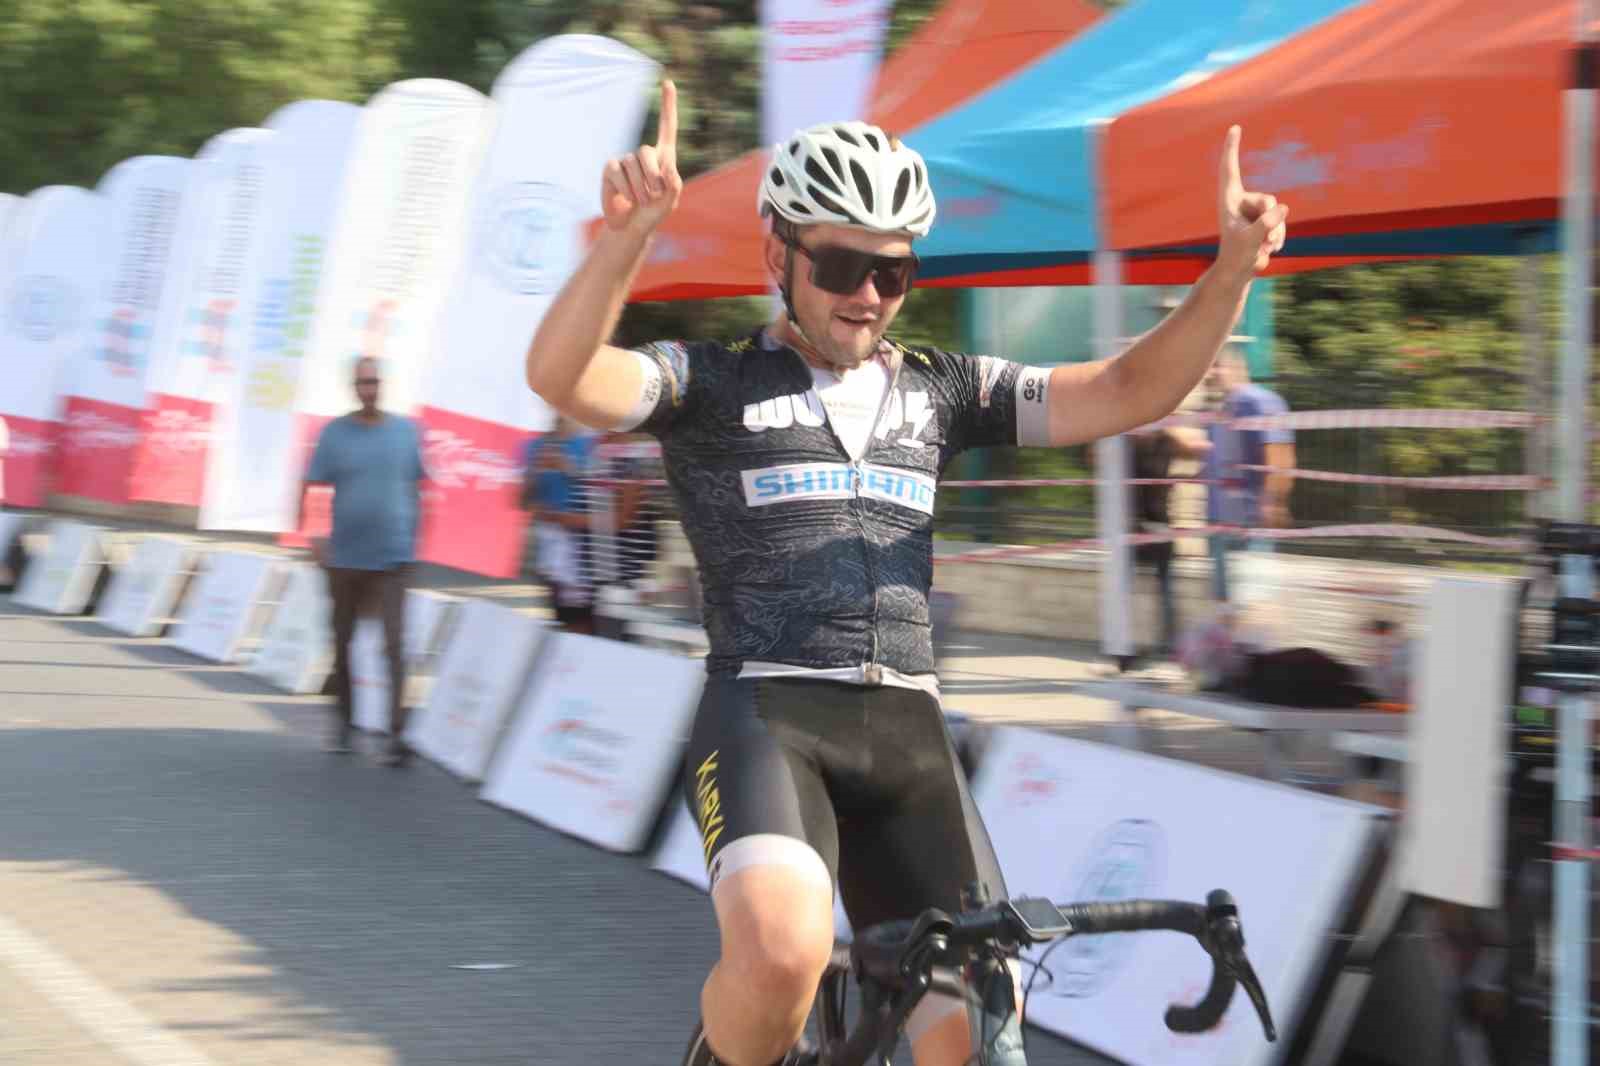 Fethiye Sporfest, bisiklet yarışı tamamlandı